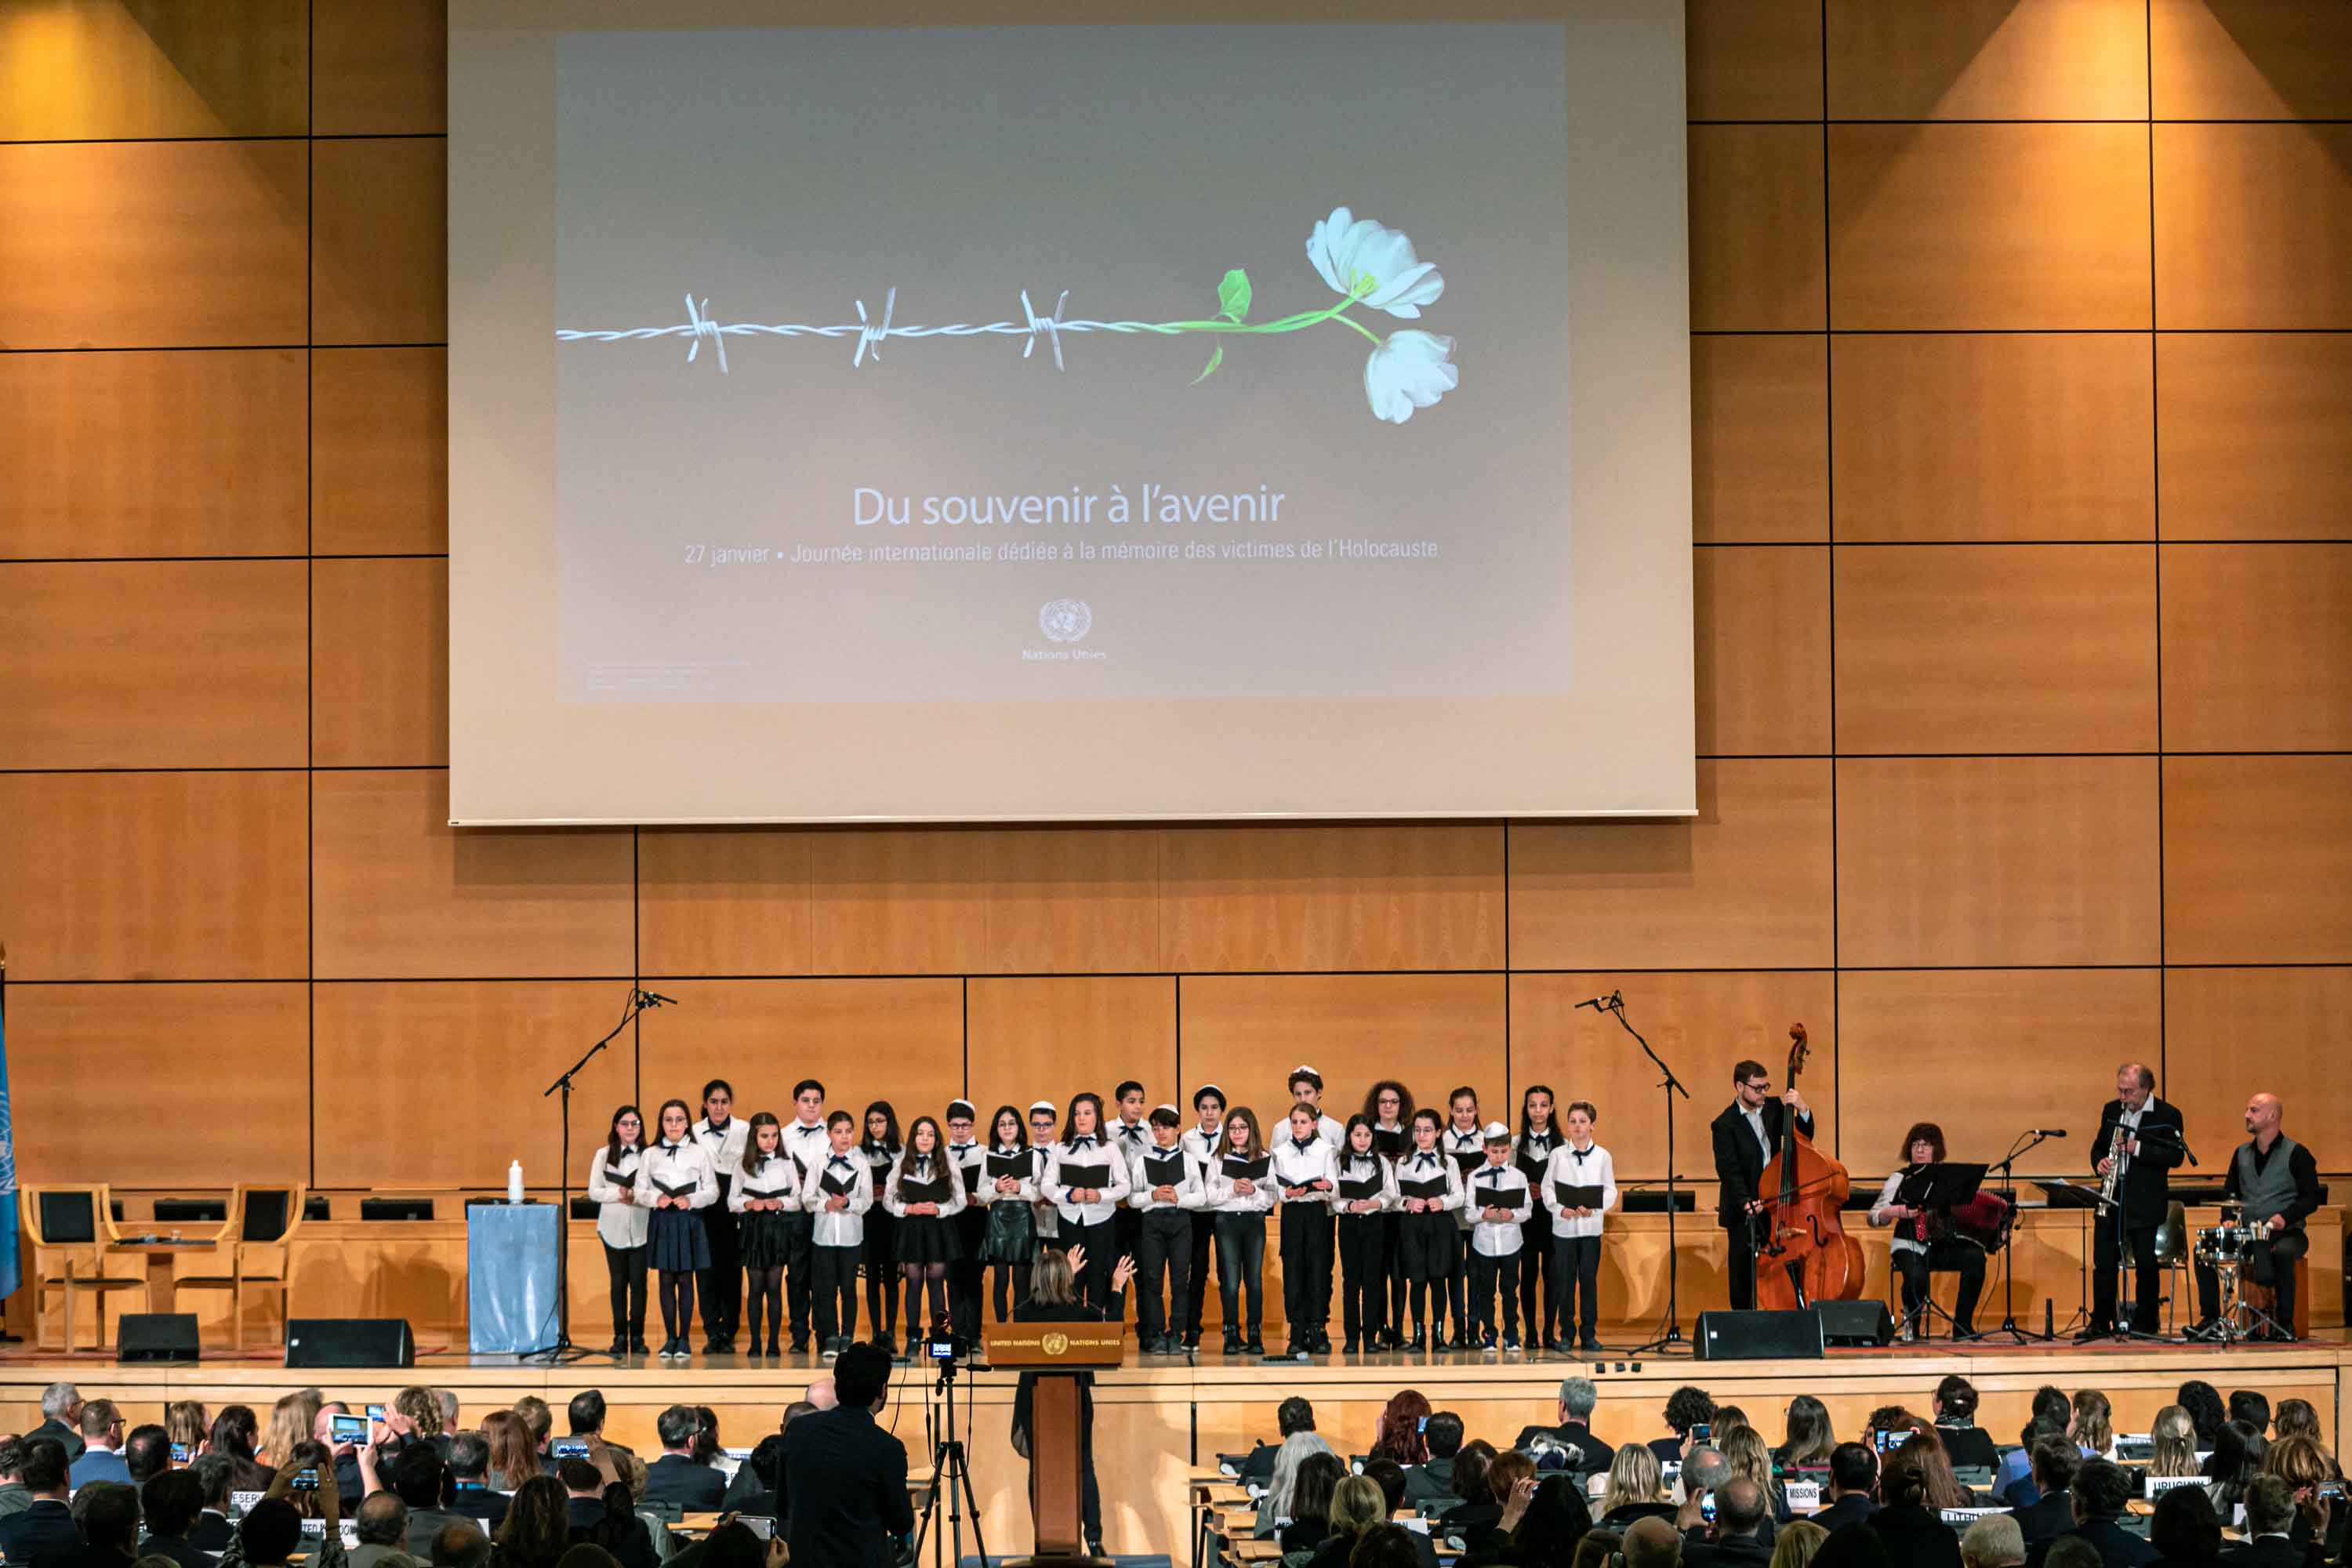 Hotegezugt et Choeur de l'Ecole Alliance Girsa, Palais des Nations, Genève 27 janvier 2020 (Photo Antoine Tardy)